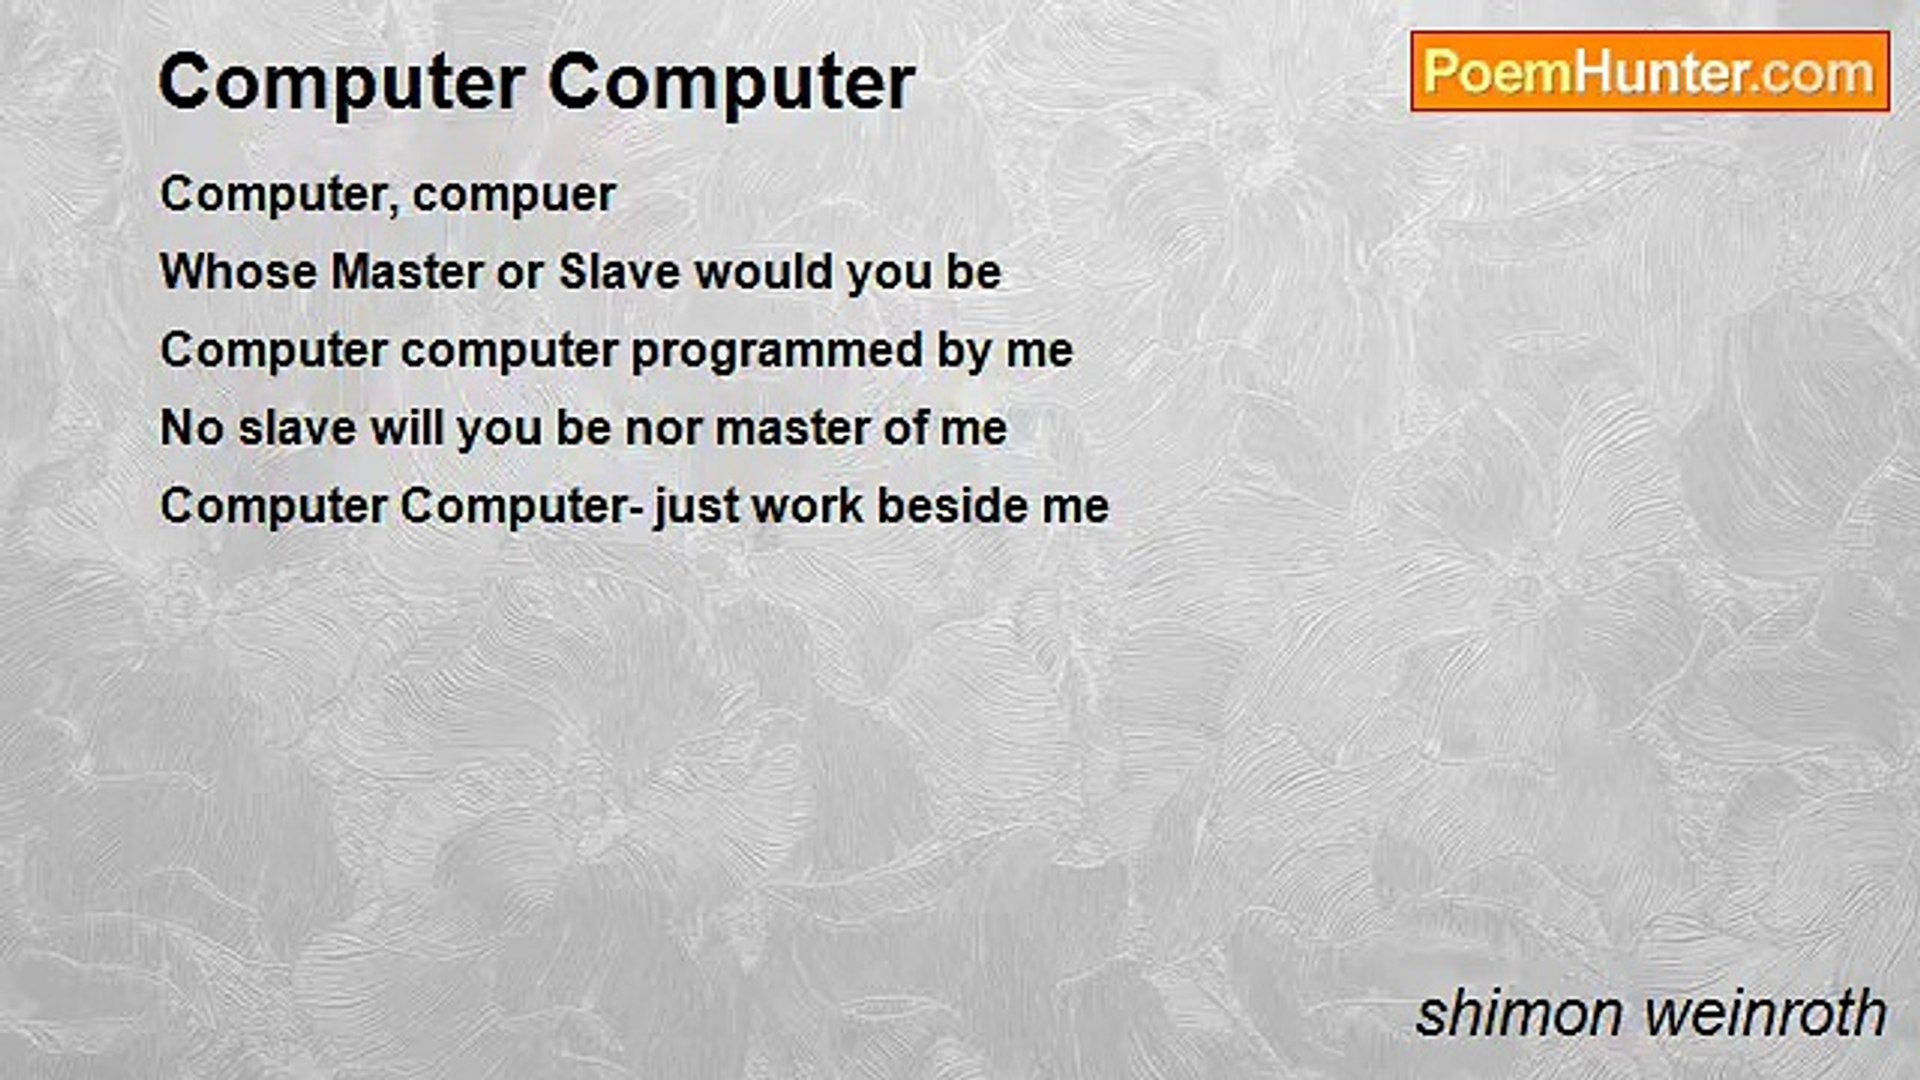 shimon weinroth - Computer Computer